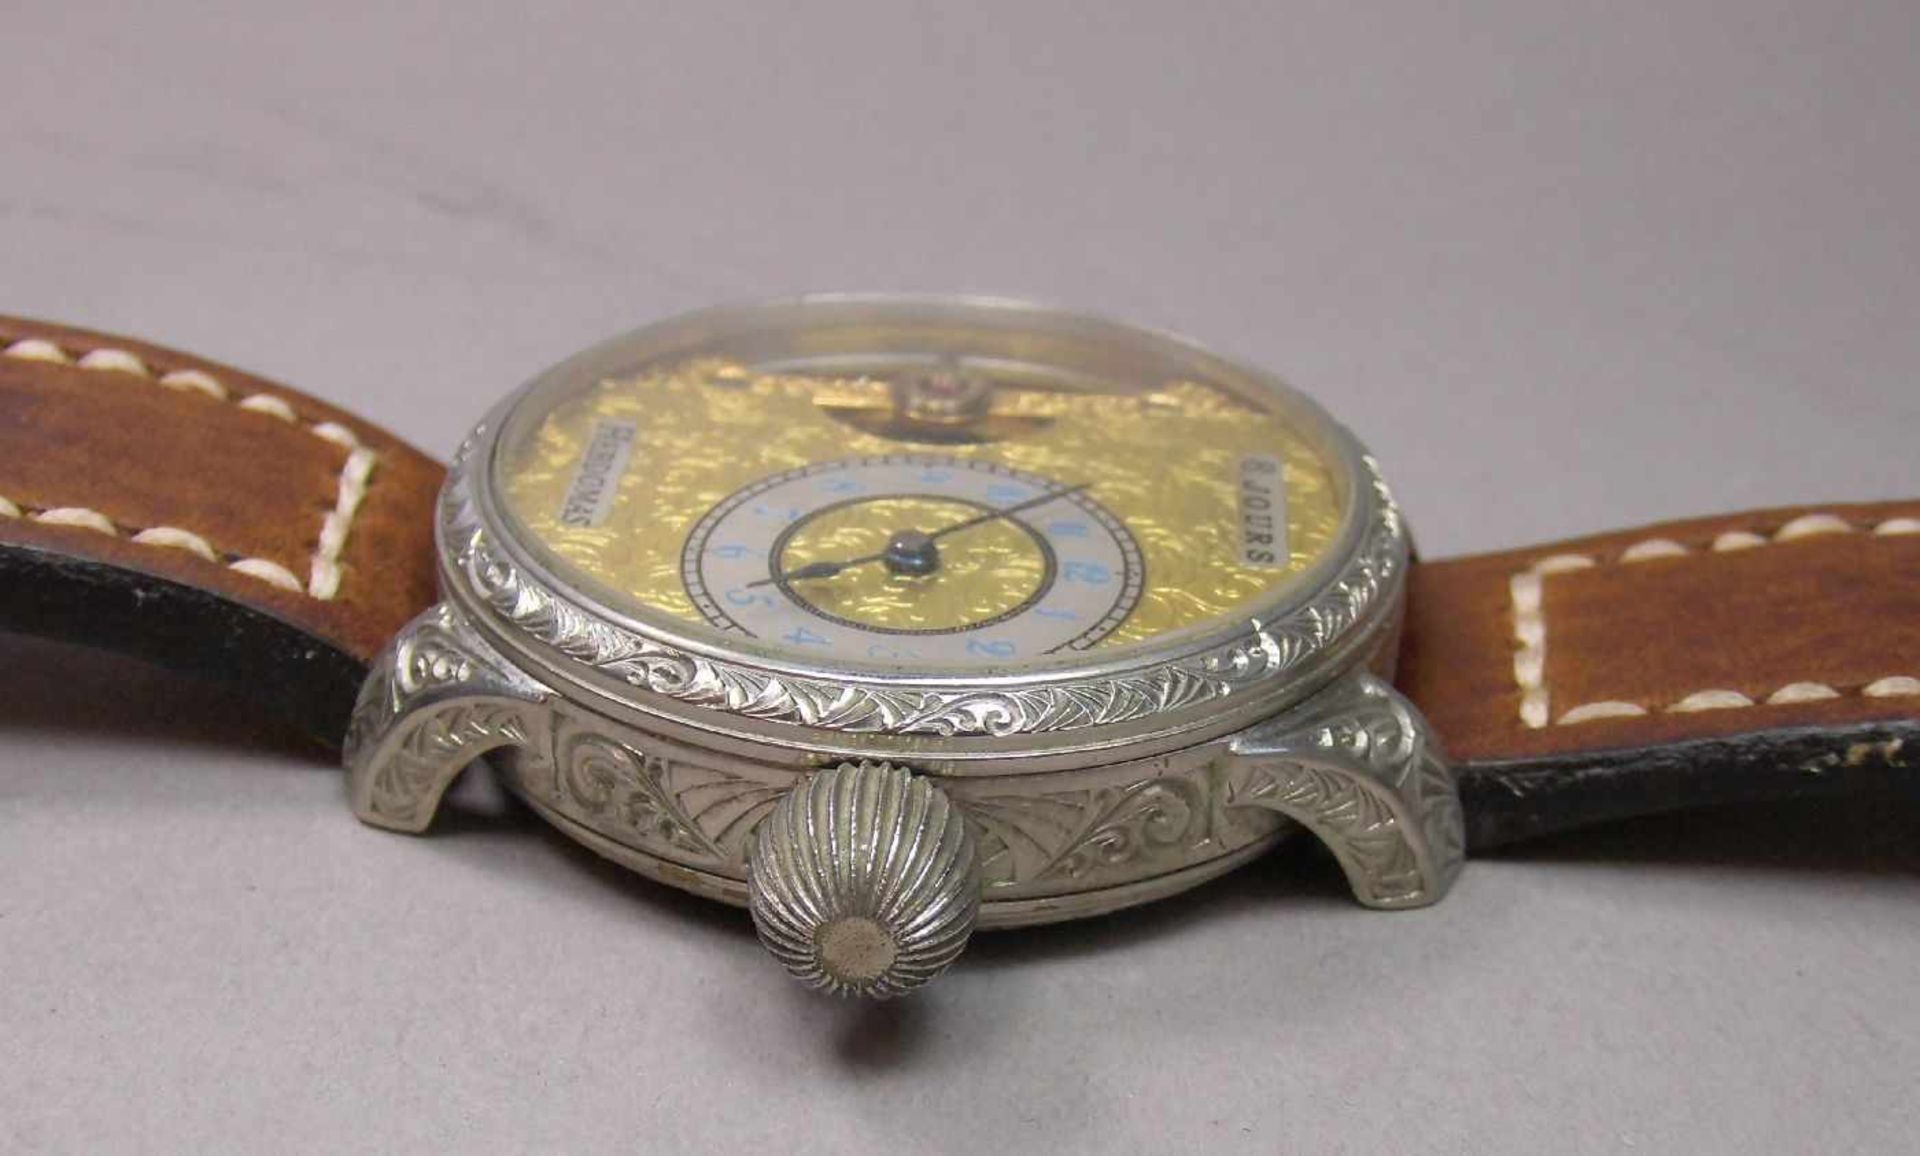 ARMBANDUHR, gearbeitet aus einer Taschenuhr / Mariage / wristwatch, 20. Jh., Handaufzug (Krone). - Image 4 of 7